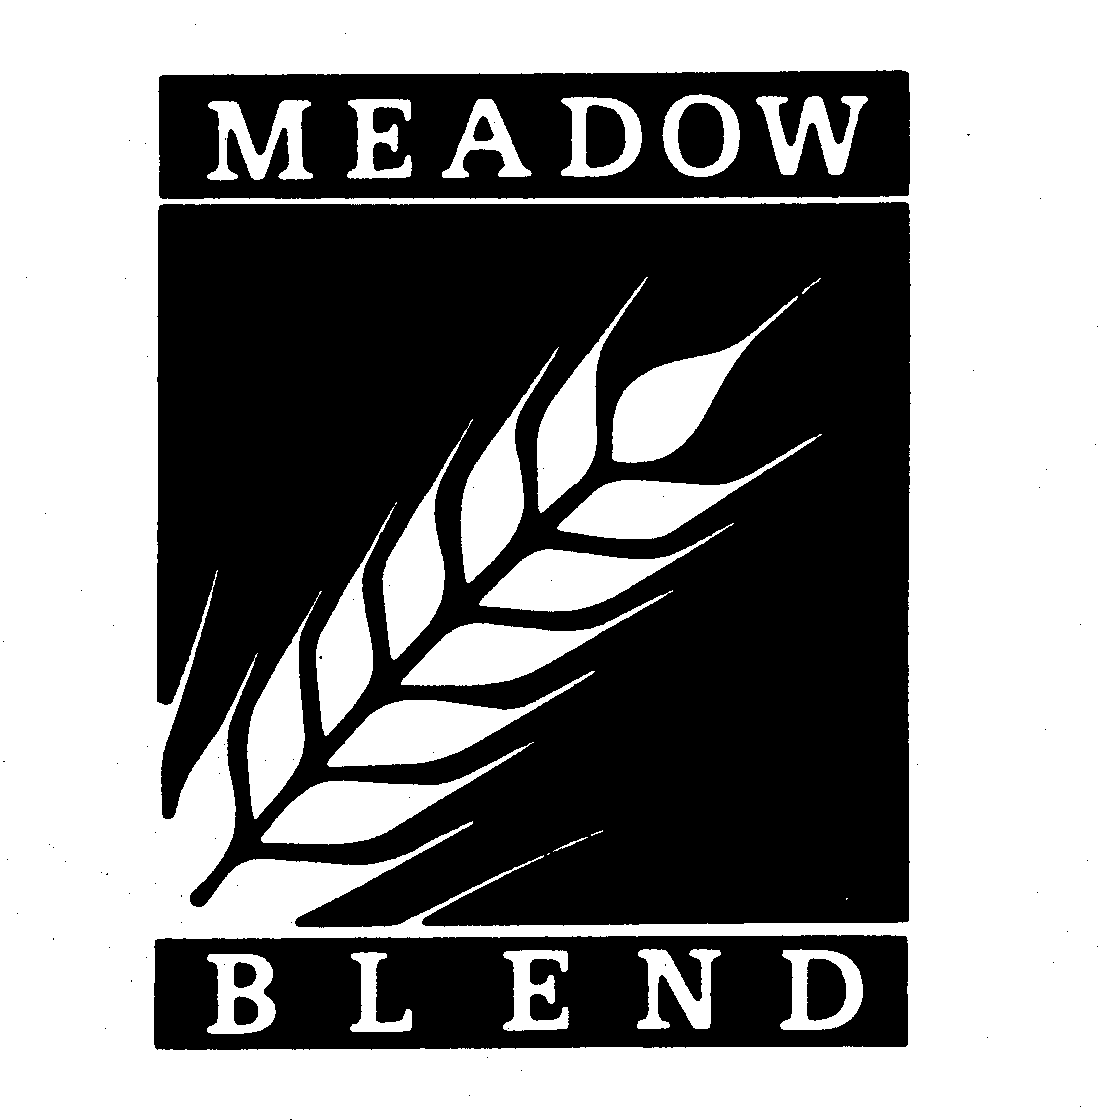  MEADOW BLEND